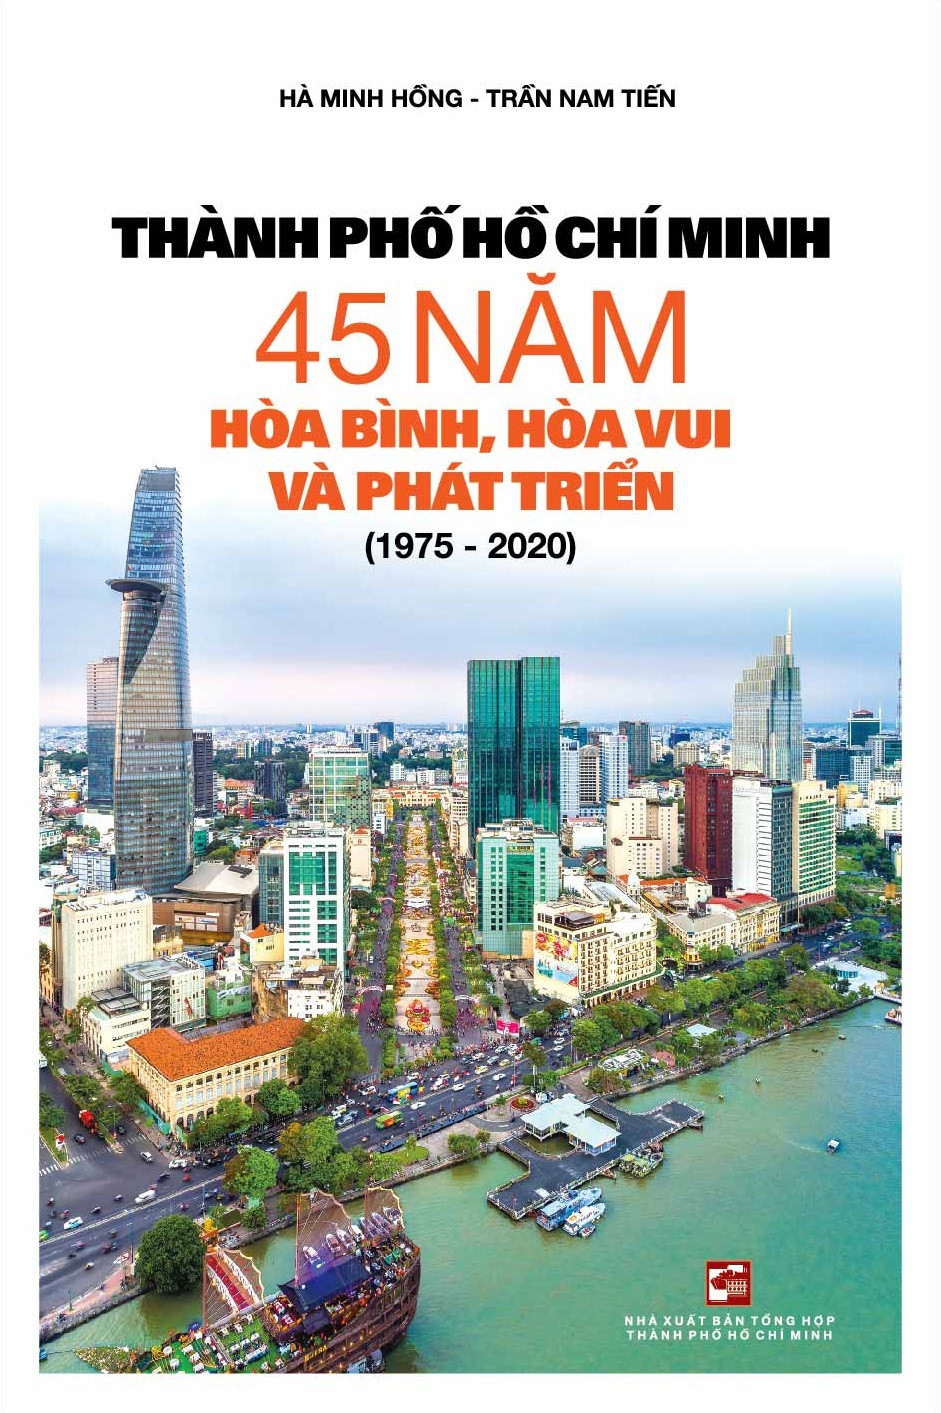 Ra mắt sách “Thành phố Hồ Chí Minh - 45 năm hòa bình, hòa vui và phát triển (1975 - 2020)” - Ảnh 1.